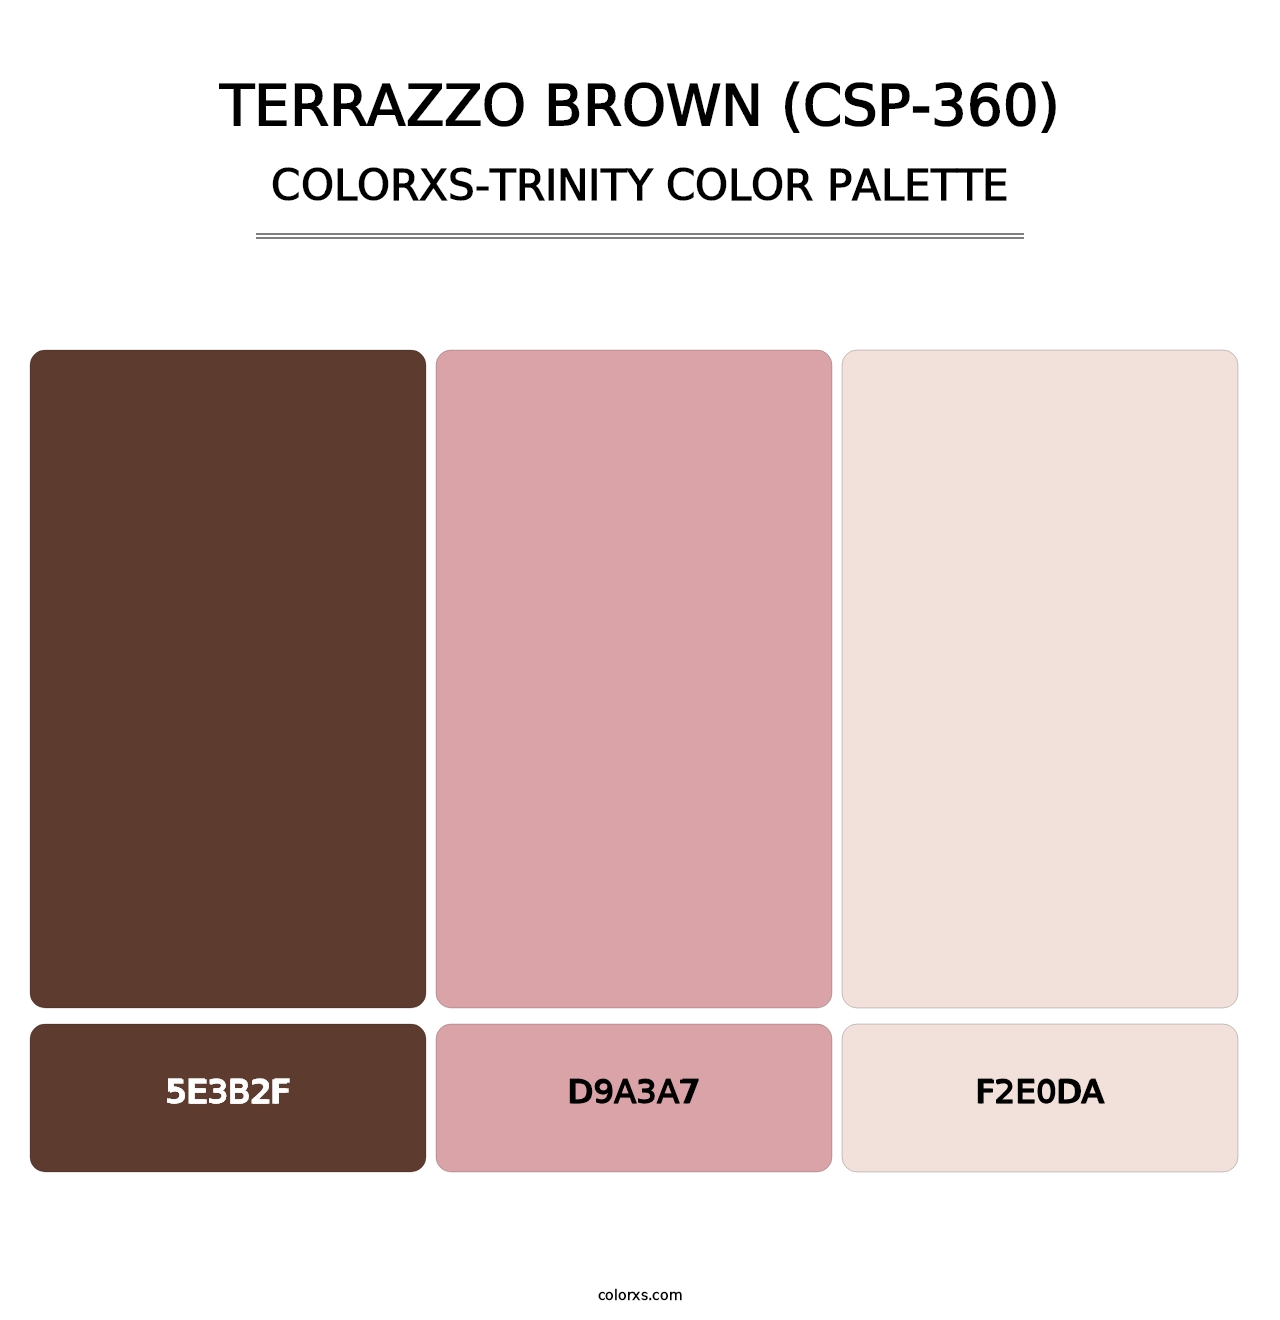 Terrazzo Brown (CSP-360) - Colorxs Trinity Palette